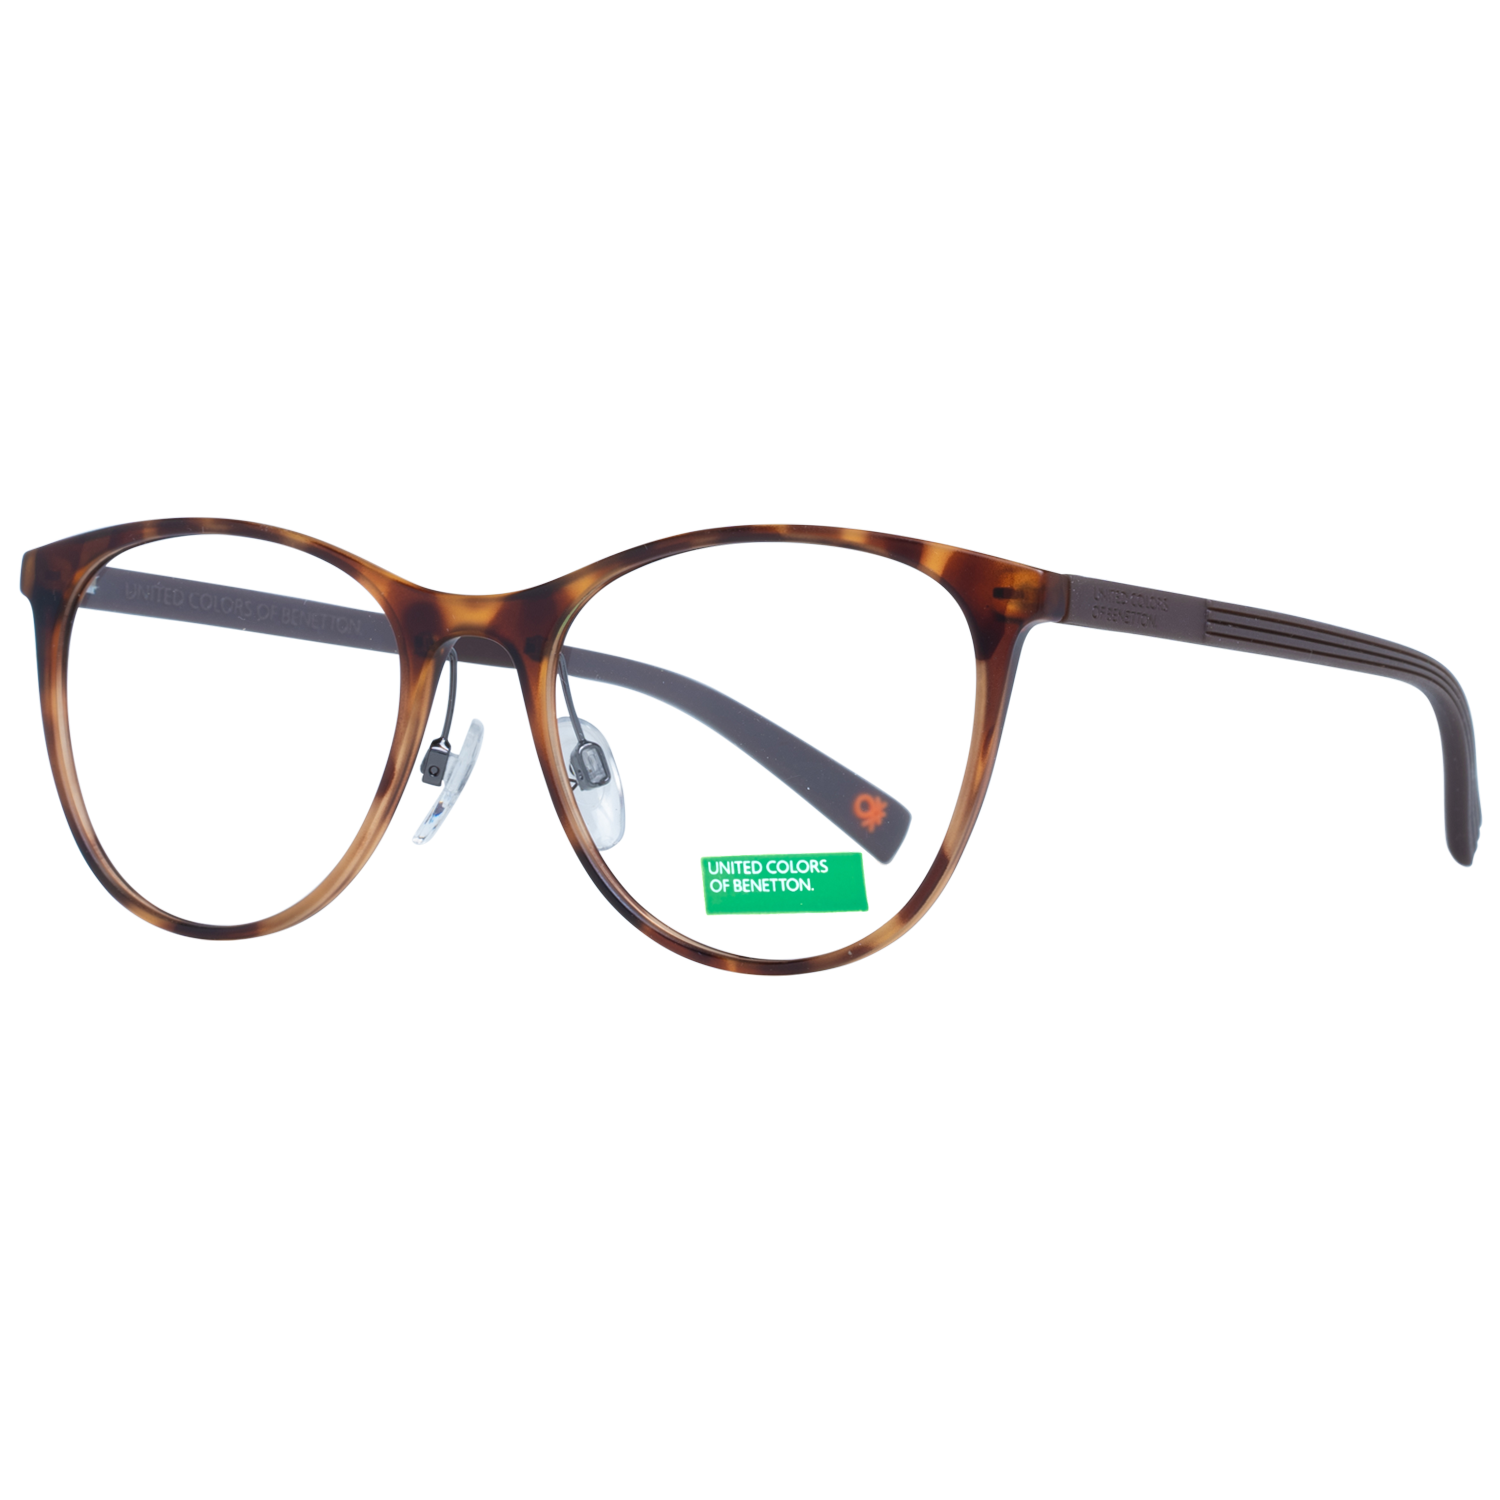 Benetton Frames Benetton Glasses Frames BEO1012 112 51 Eyeglasses Eyewear UK USA Australia 